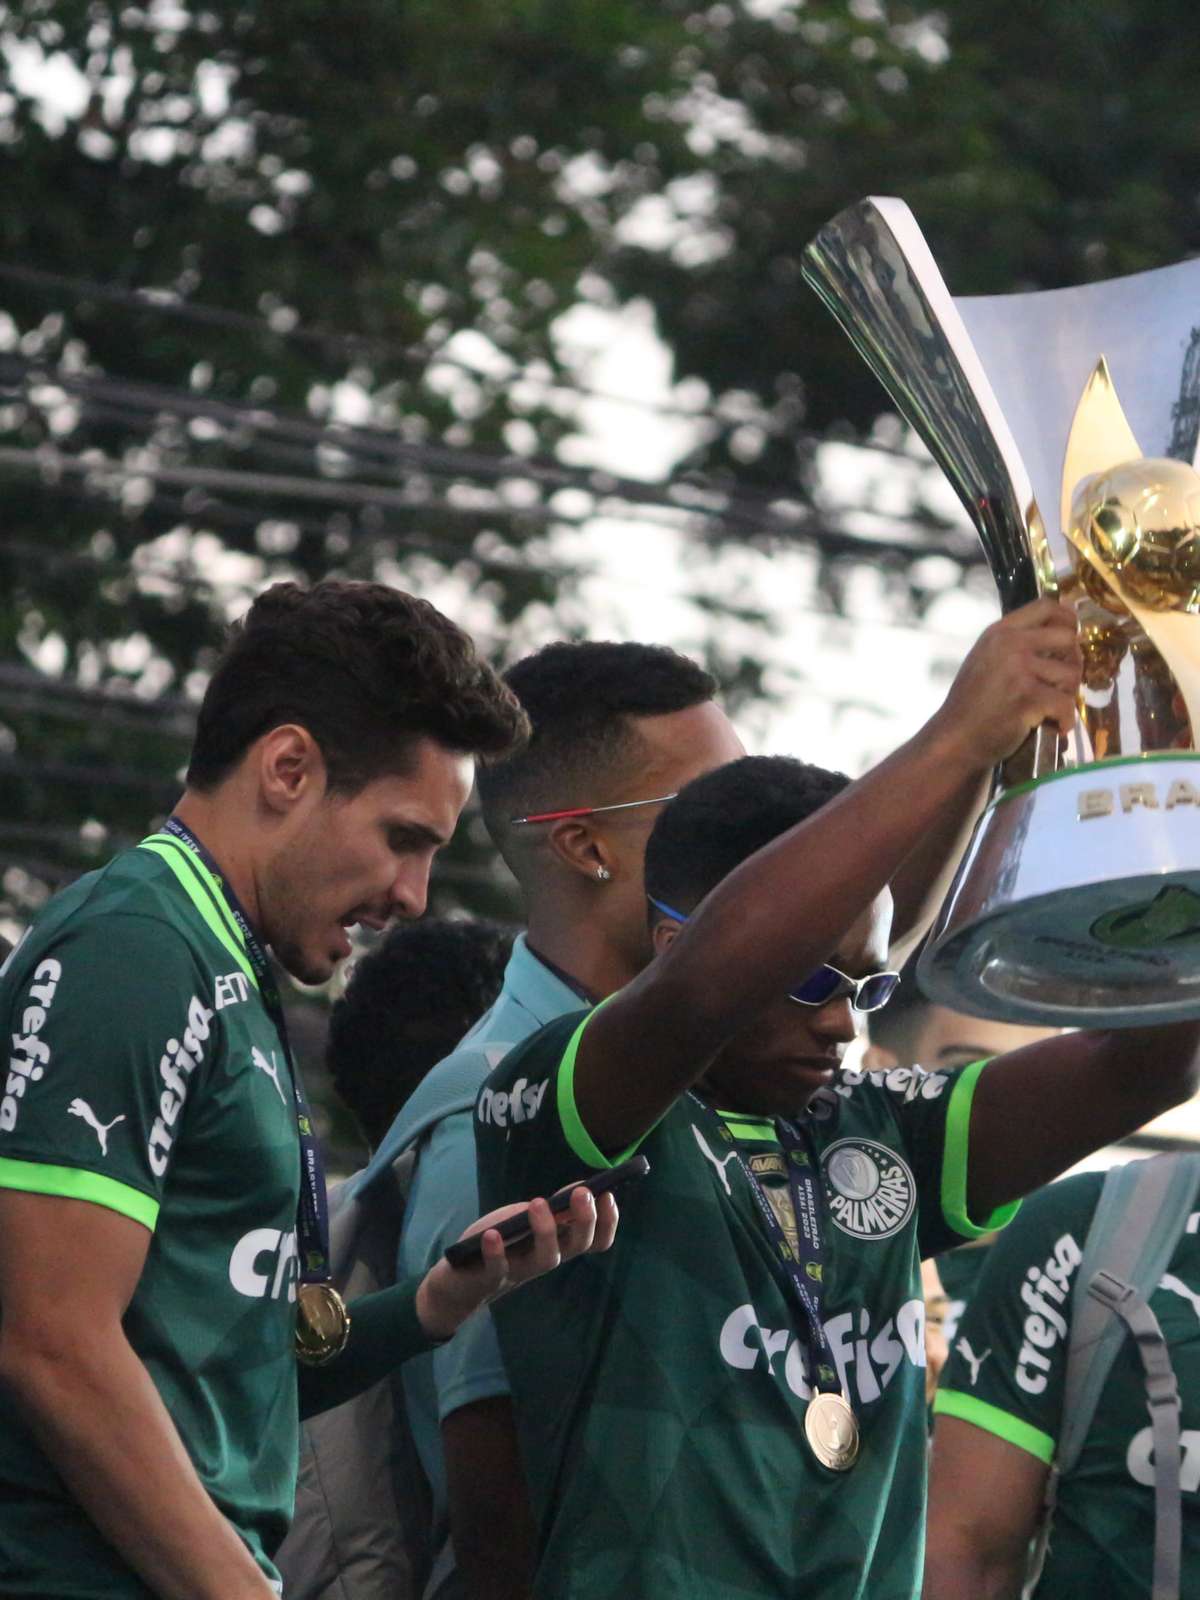 Copa do Brasil coloca sportv e Premiere na liderança da TV por